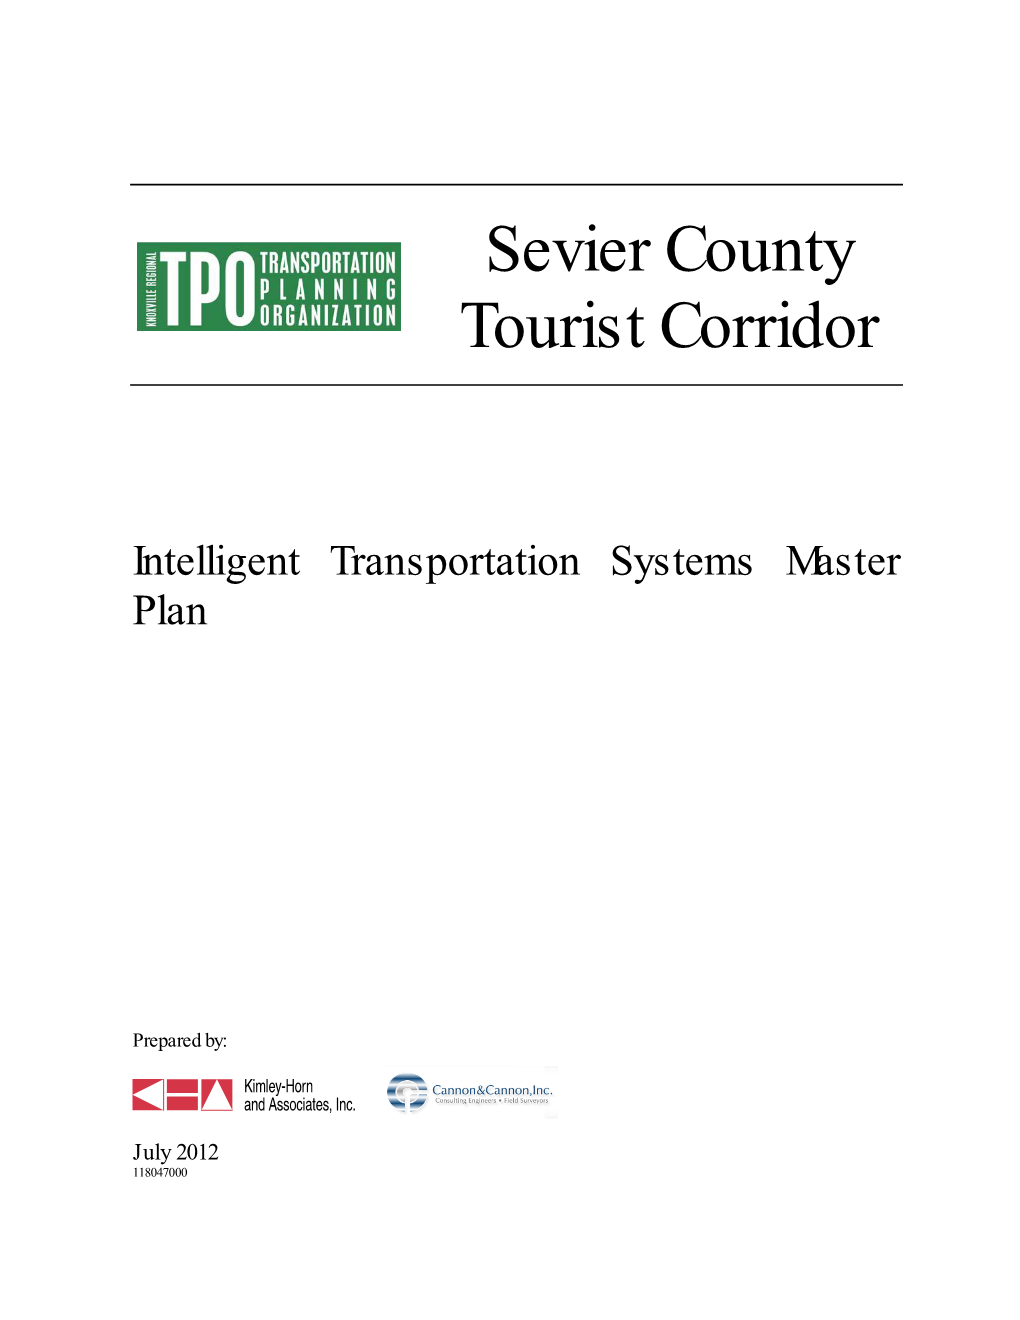 Sevier County Tourist Corridor